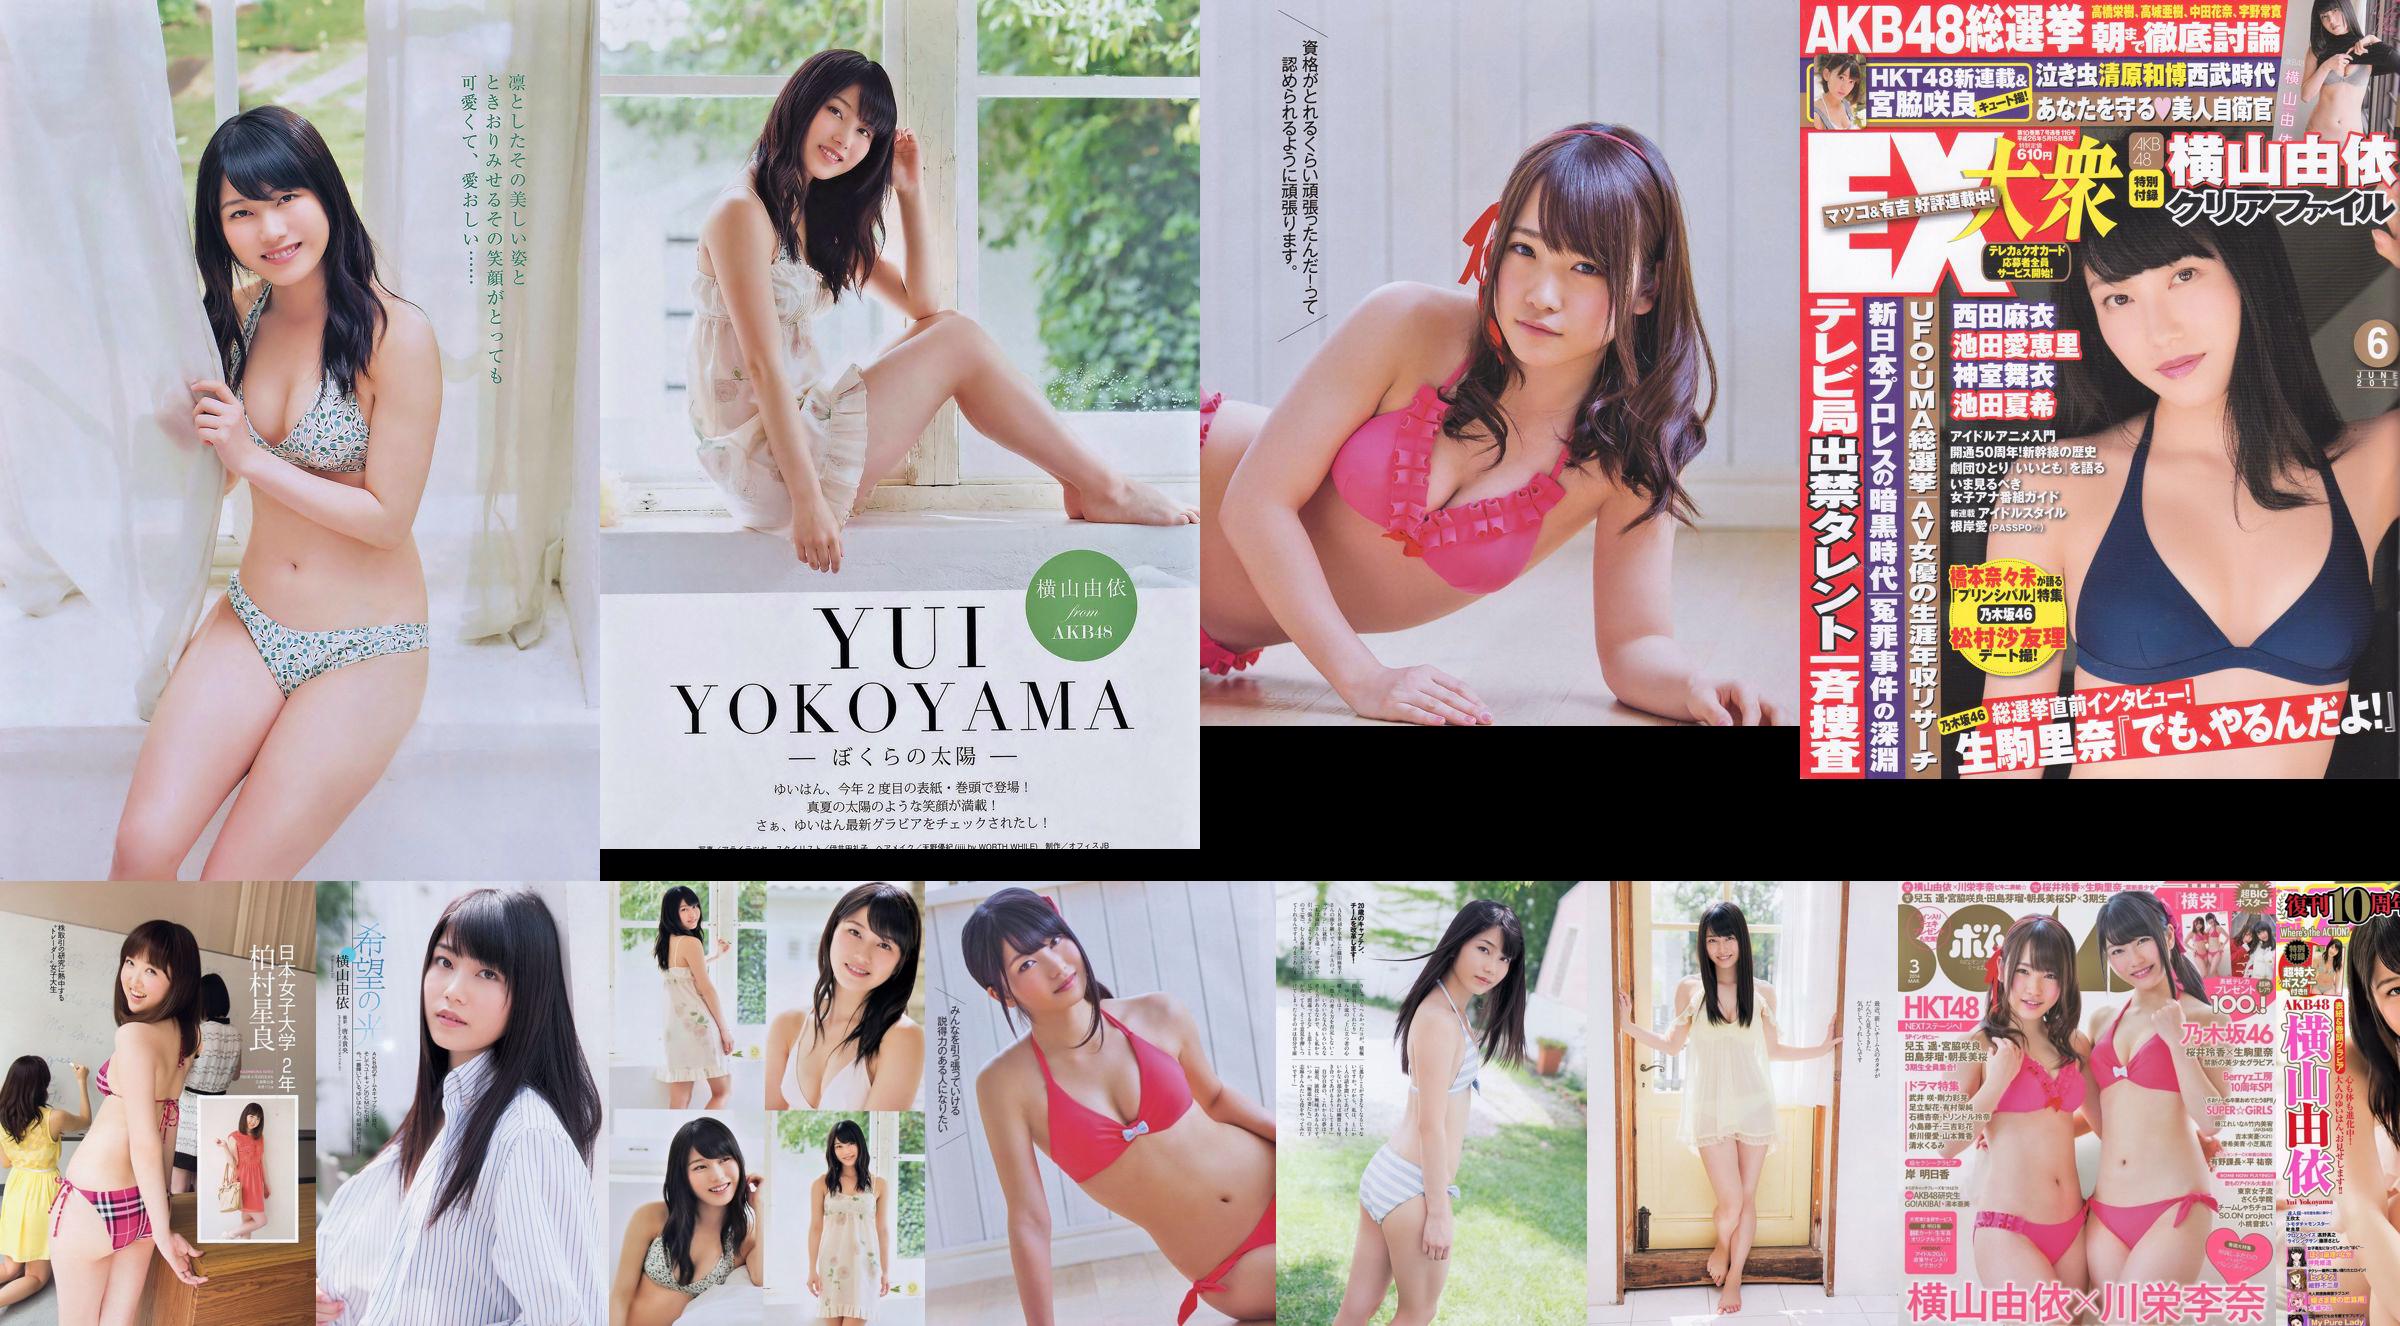 Momoiro Clover Z Yui Yokoyama Yua Shinkawa Mio Uema Anri Sugihara Kumi Yagami [Weekly Playboy] 2013 No.20 Photo Moshi No.c6f4ec Page 5